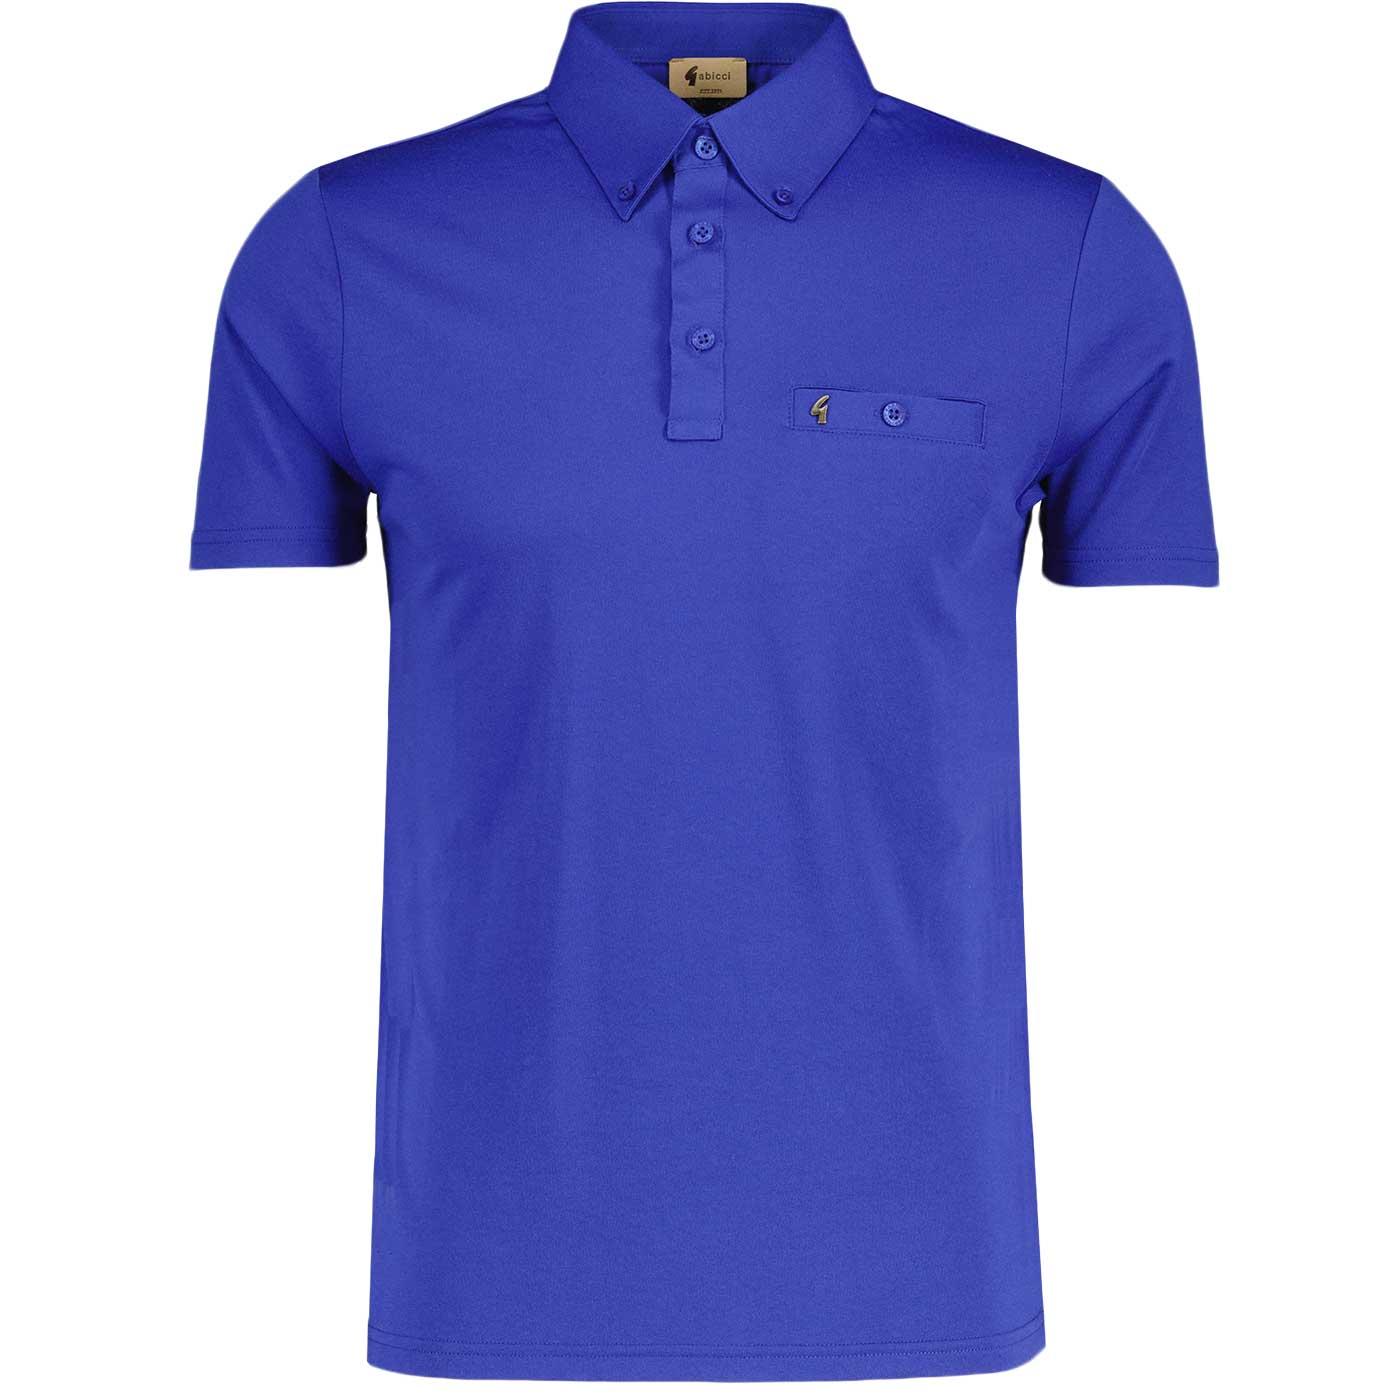 Ladro GABICCI VINTAGE Button Down Mod Polo Shirt T